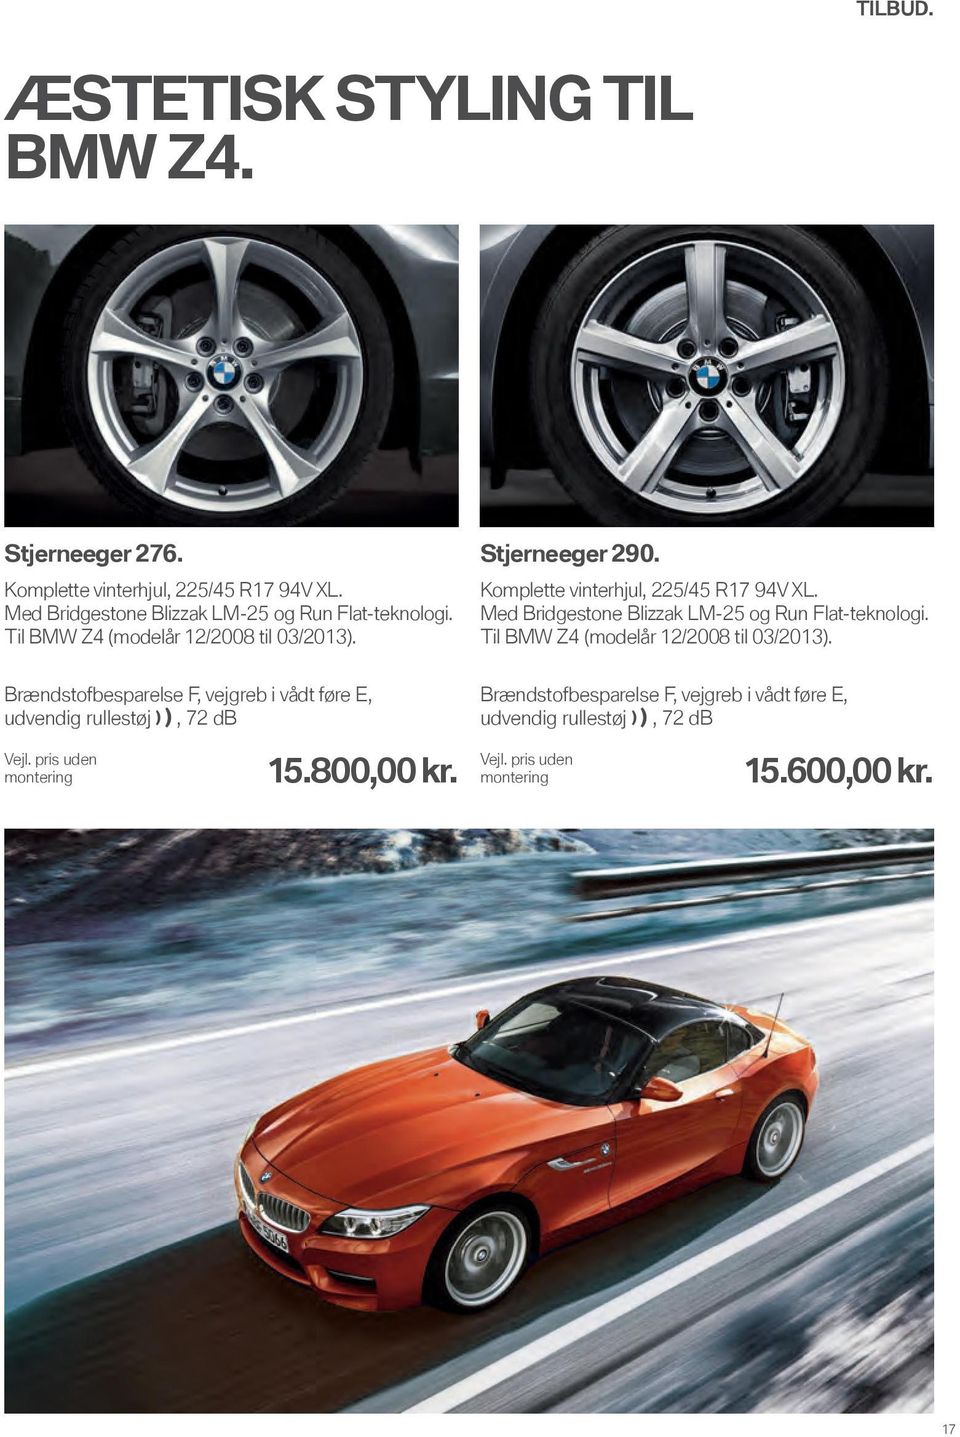 Til BMW Z4 (modelår 12/2008 til 03/2013). Stjerneeger 290. 225/45 R17 94V XL.